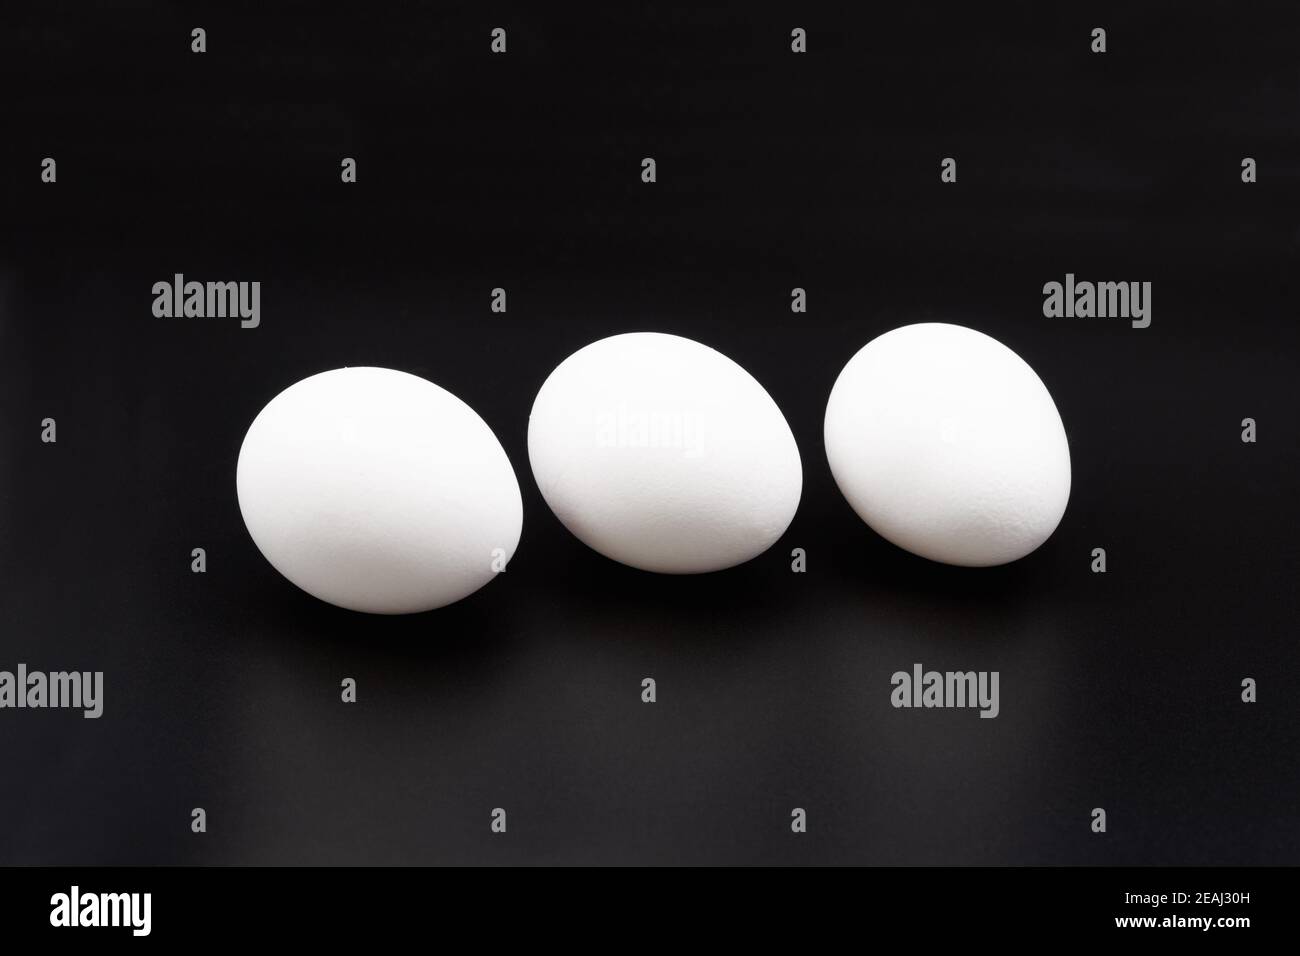 Eggs on black. Stock Photo